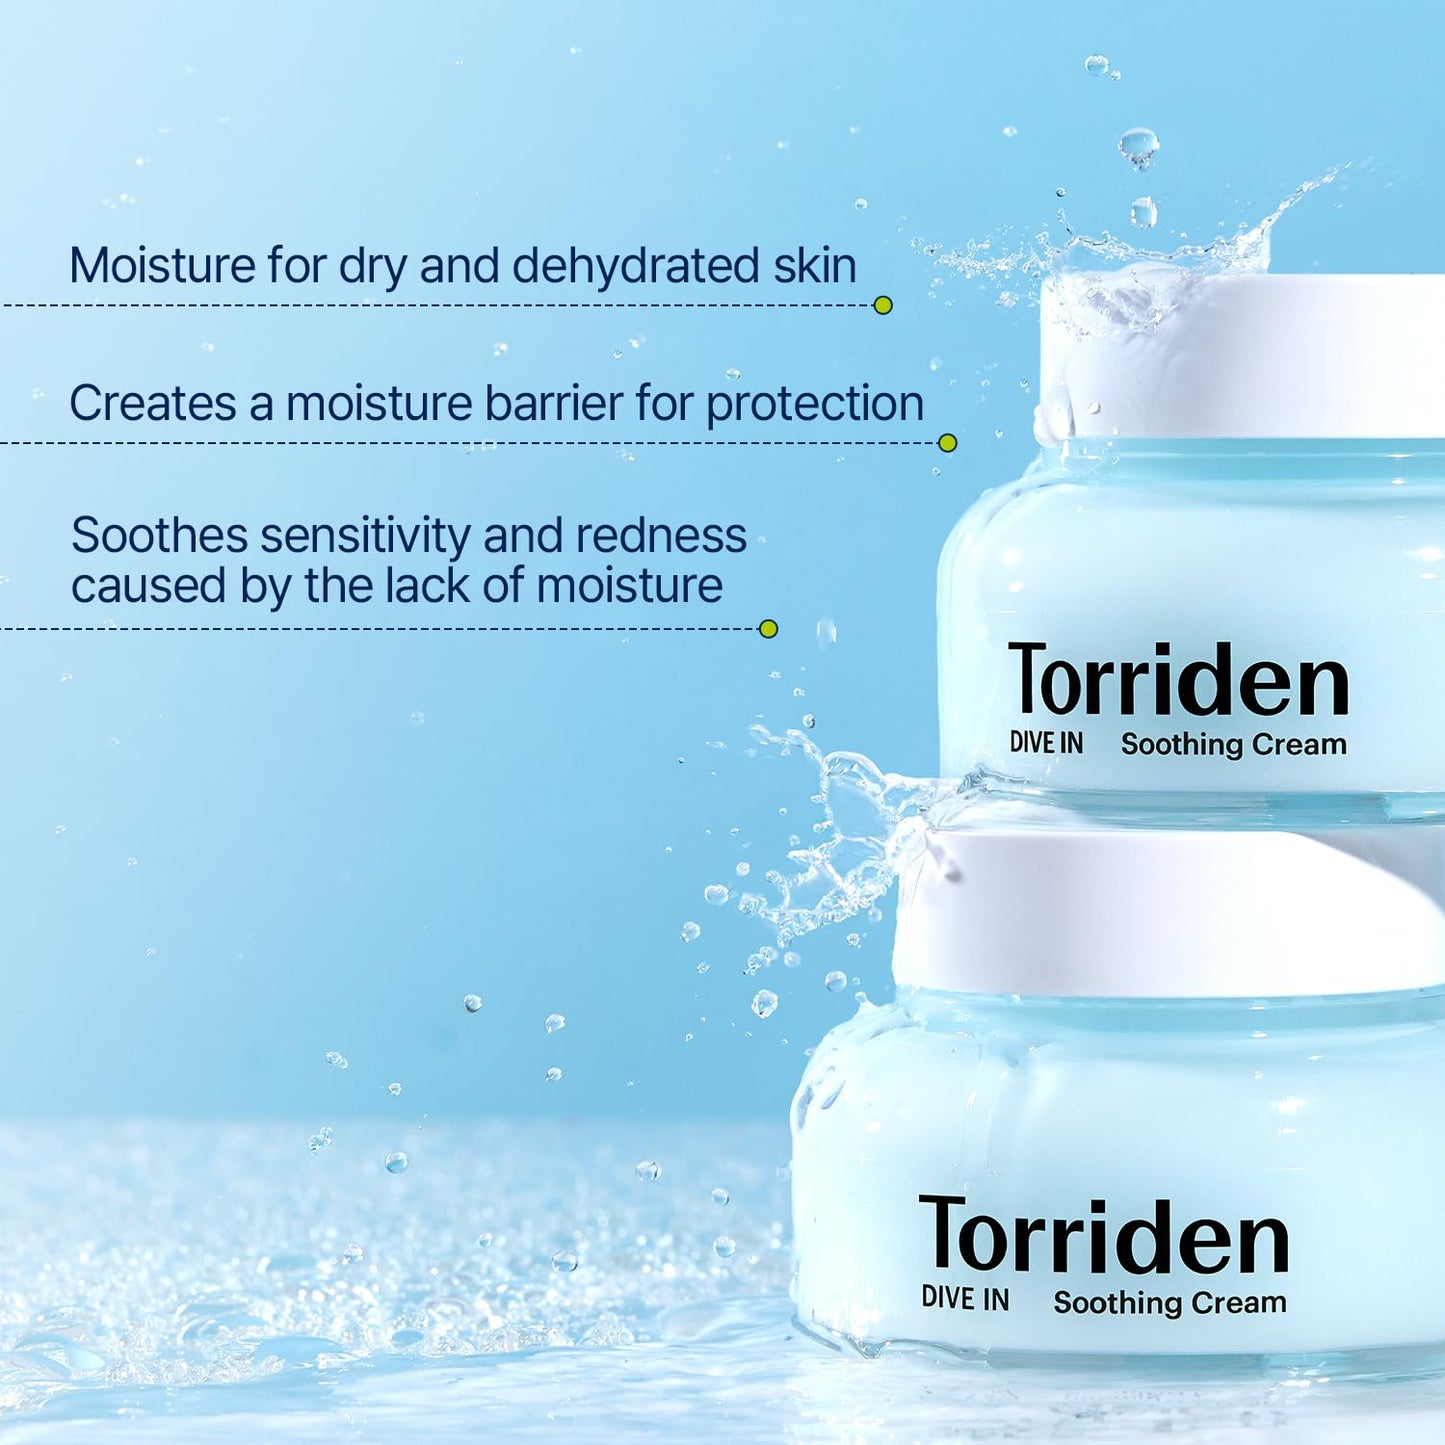 TORRIDEN Dive In Low Molecular Hyaluronic Acid Soothing Cream